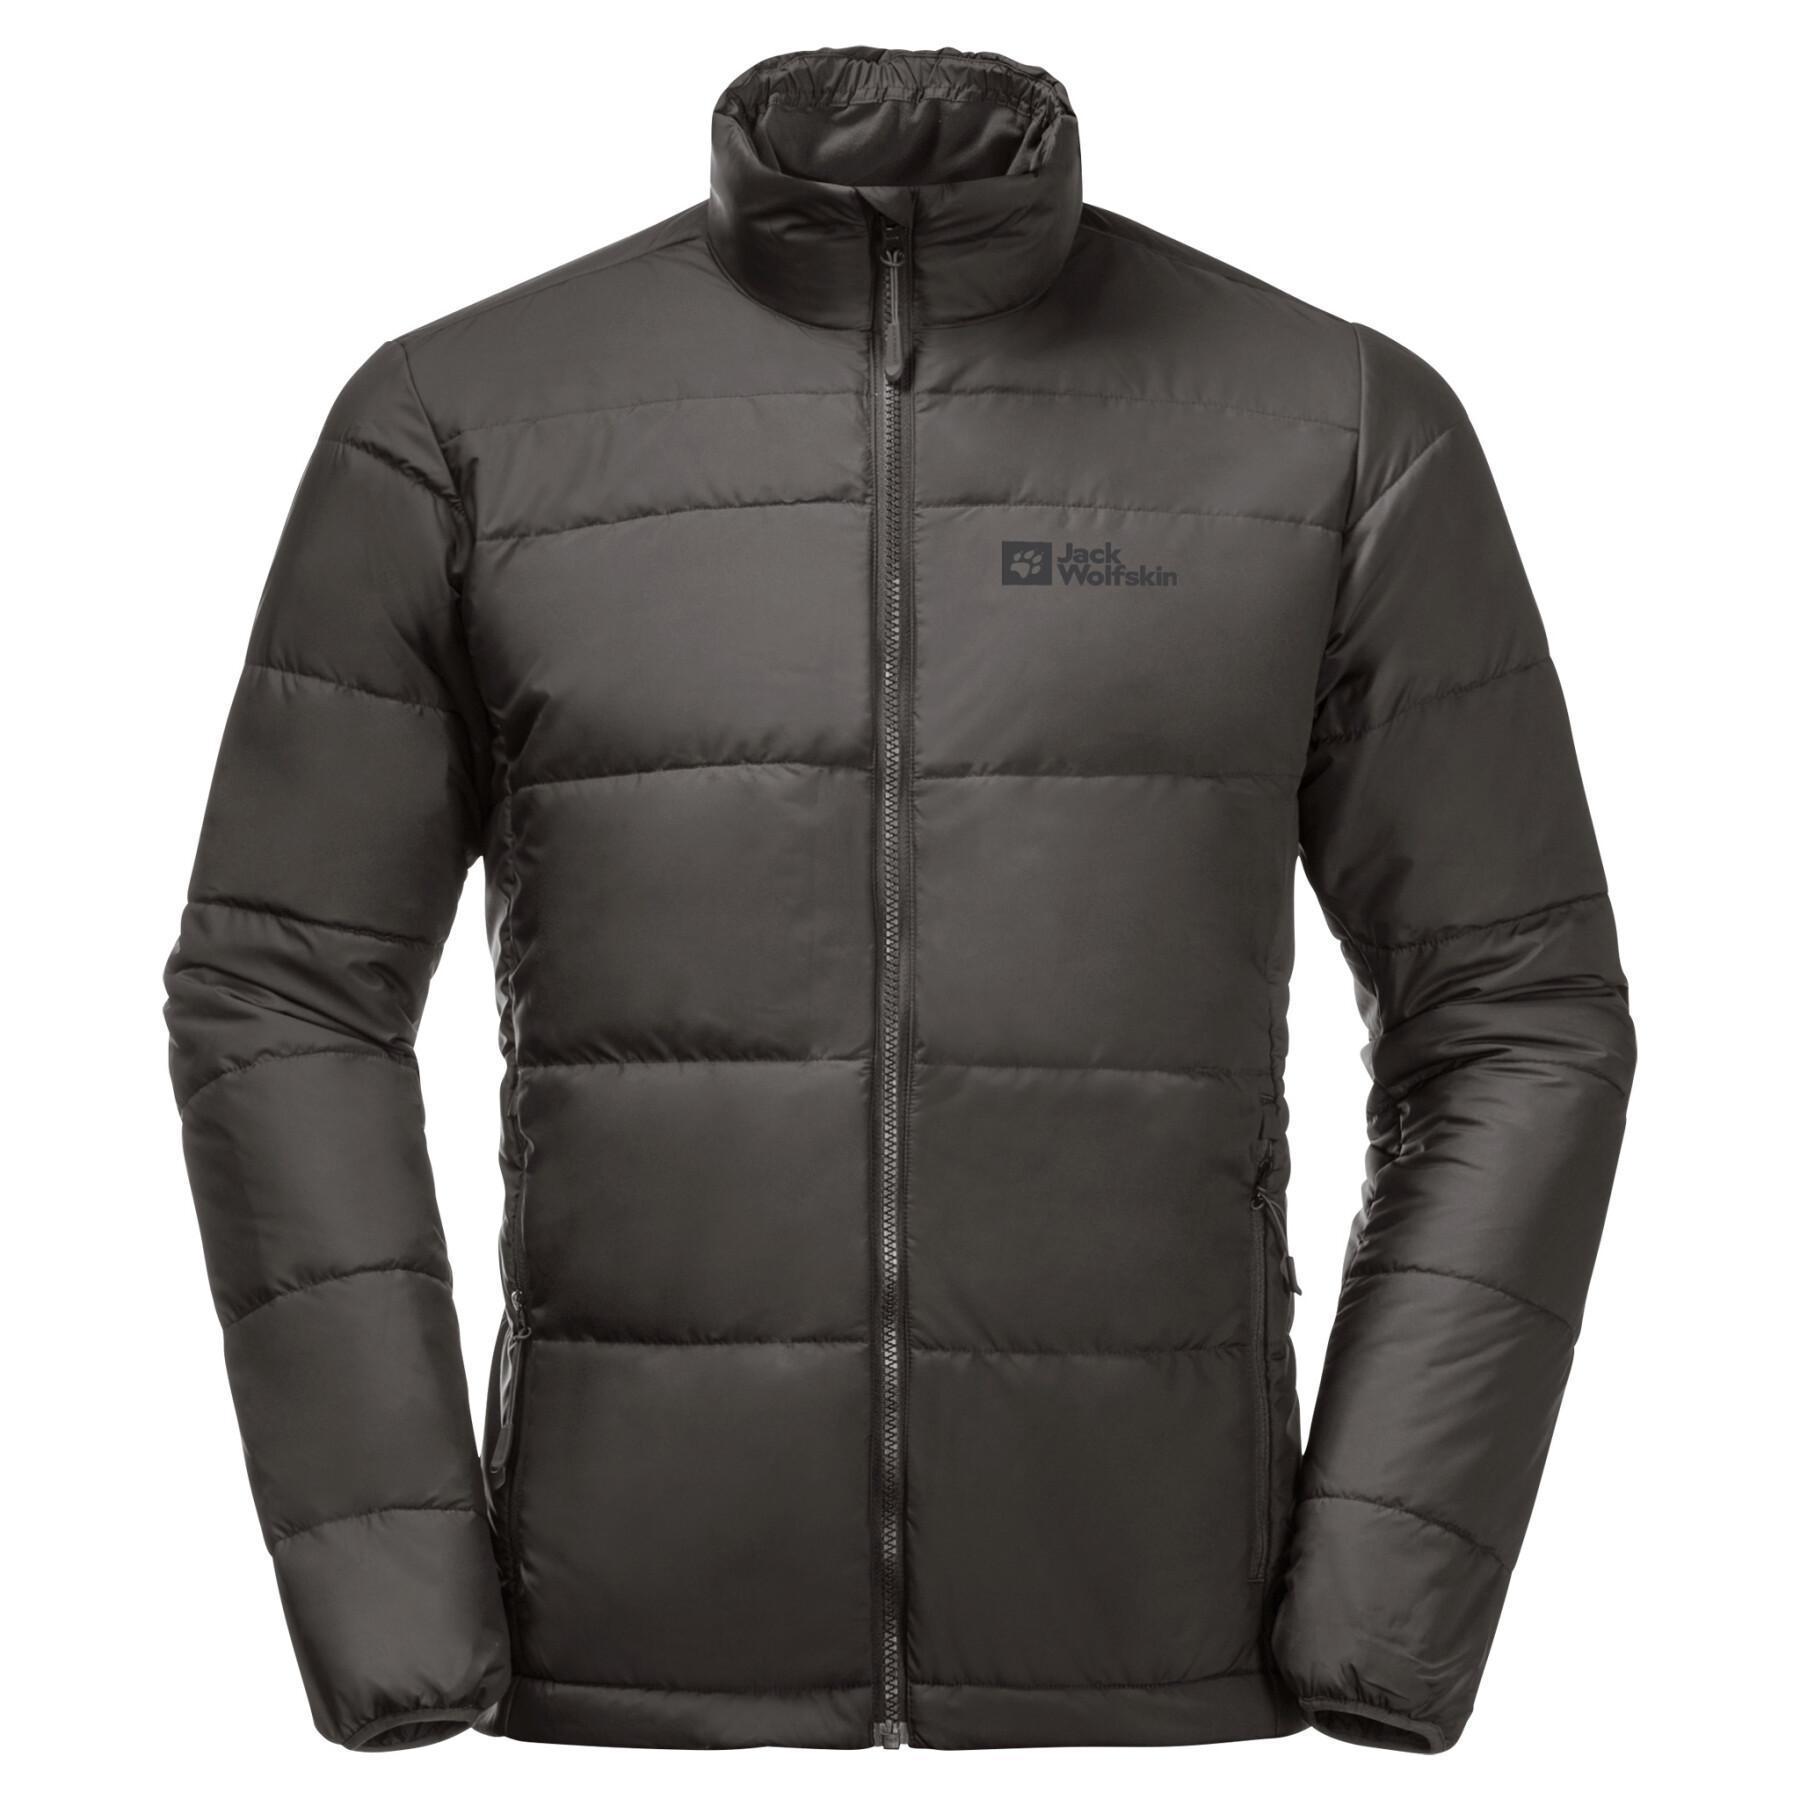 3-in-1 waterproof jacket Jack Wolfskin Bergland